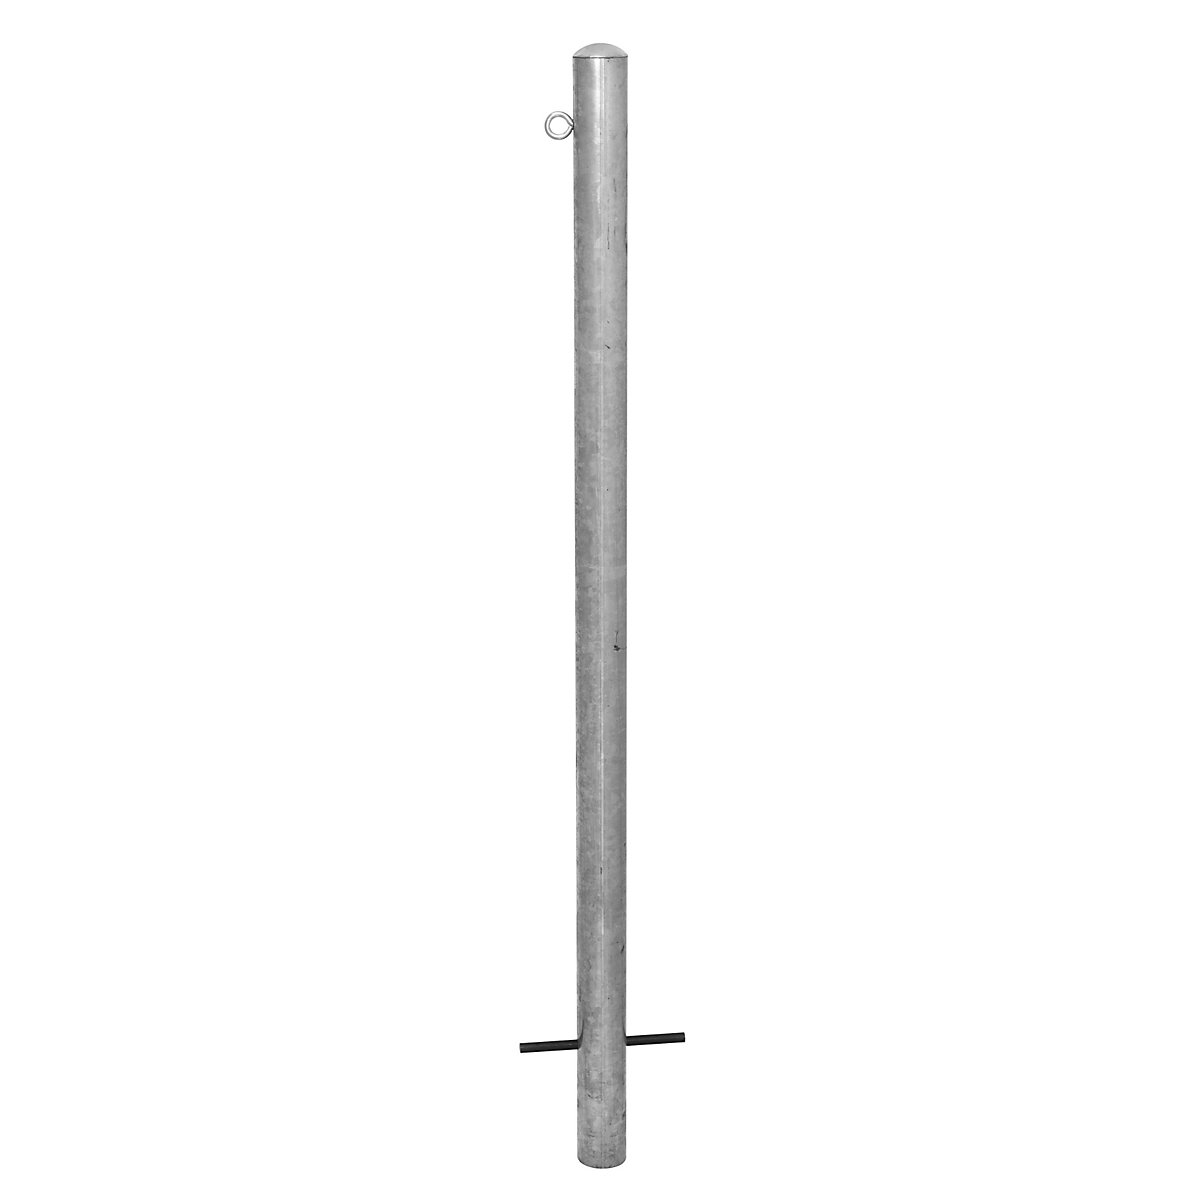 Stup za ograđivanje, za betoniranje, Ø 76 mm, vruće pocinčana izvedba, 1 ušica-4